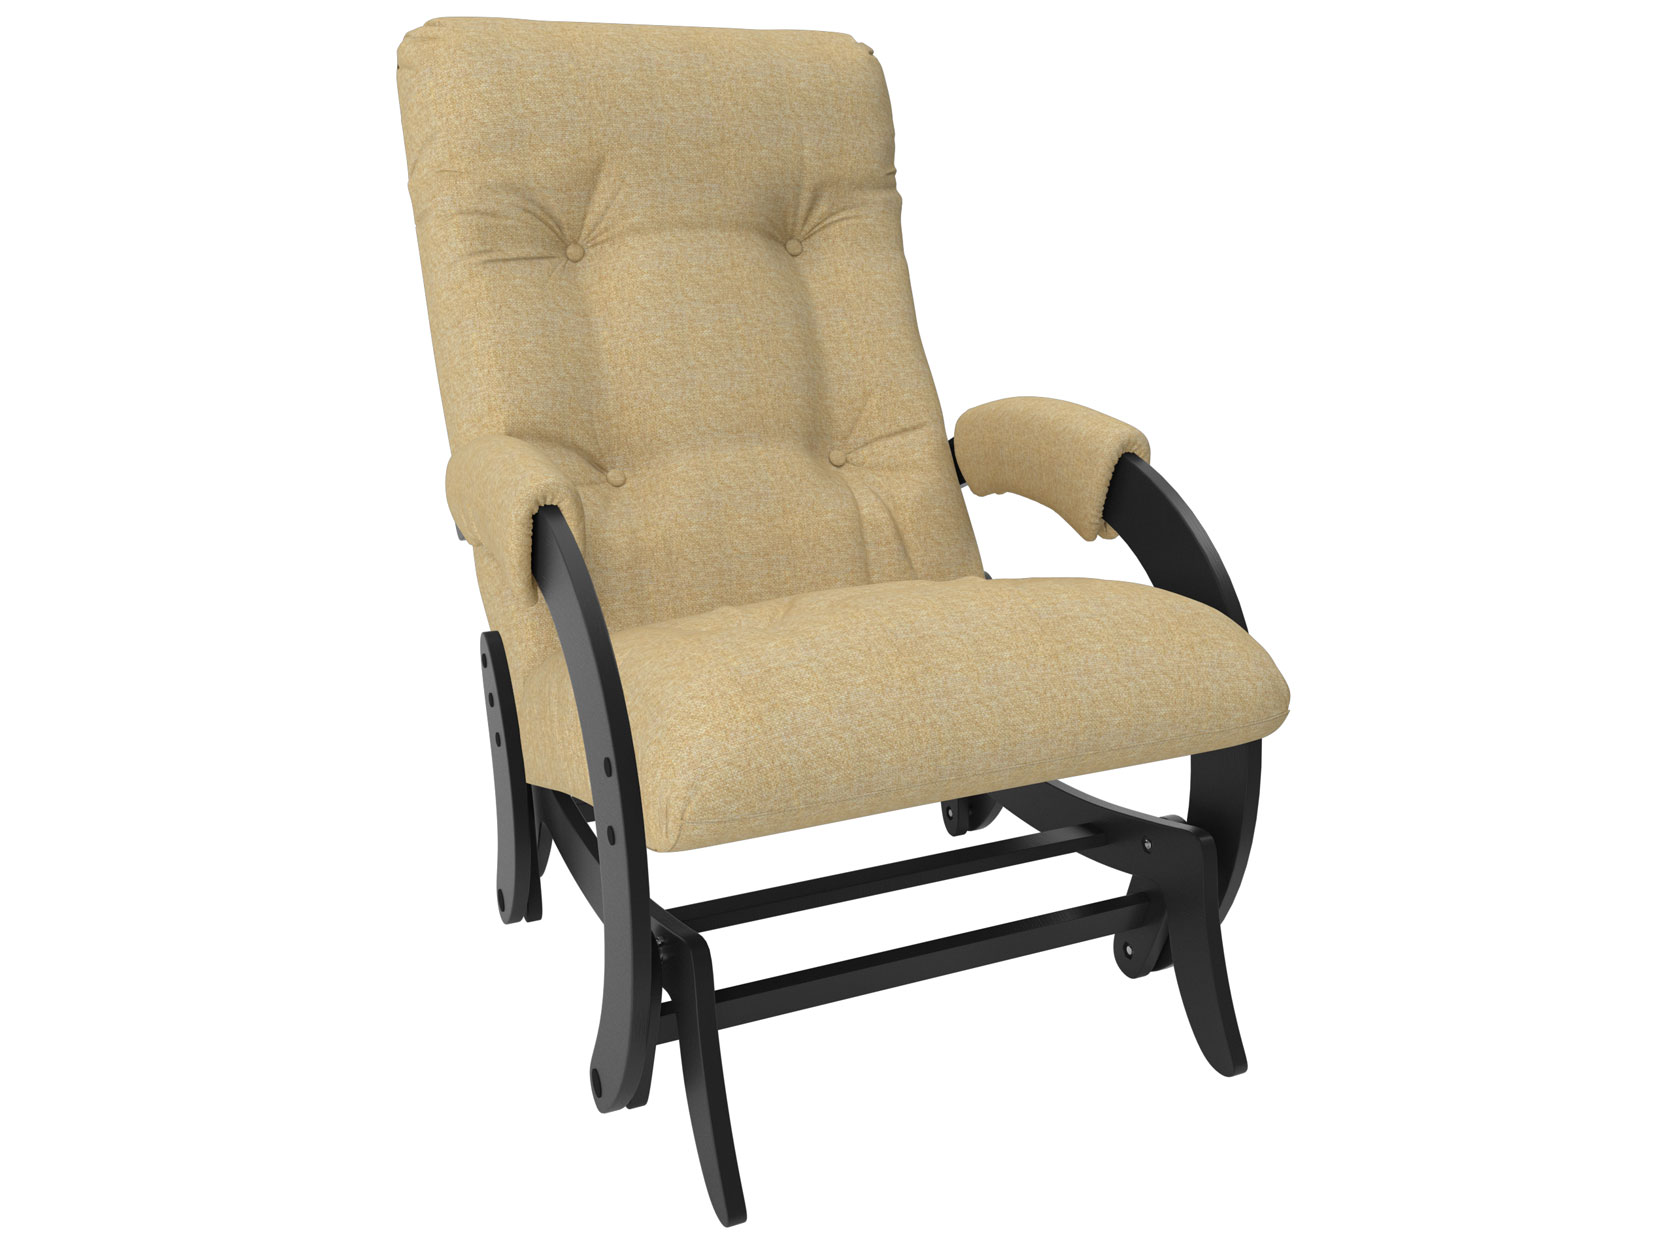 Кресло-глайдер Мебель Импэкс Комфорт Модель 68 Malta 03А, рогожка, венге